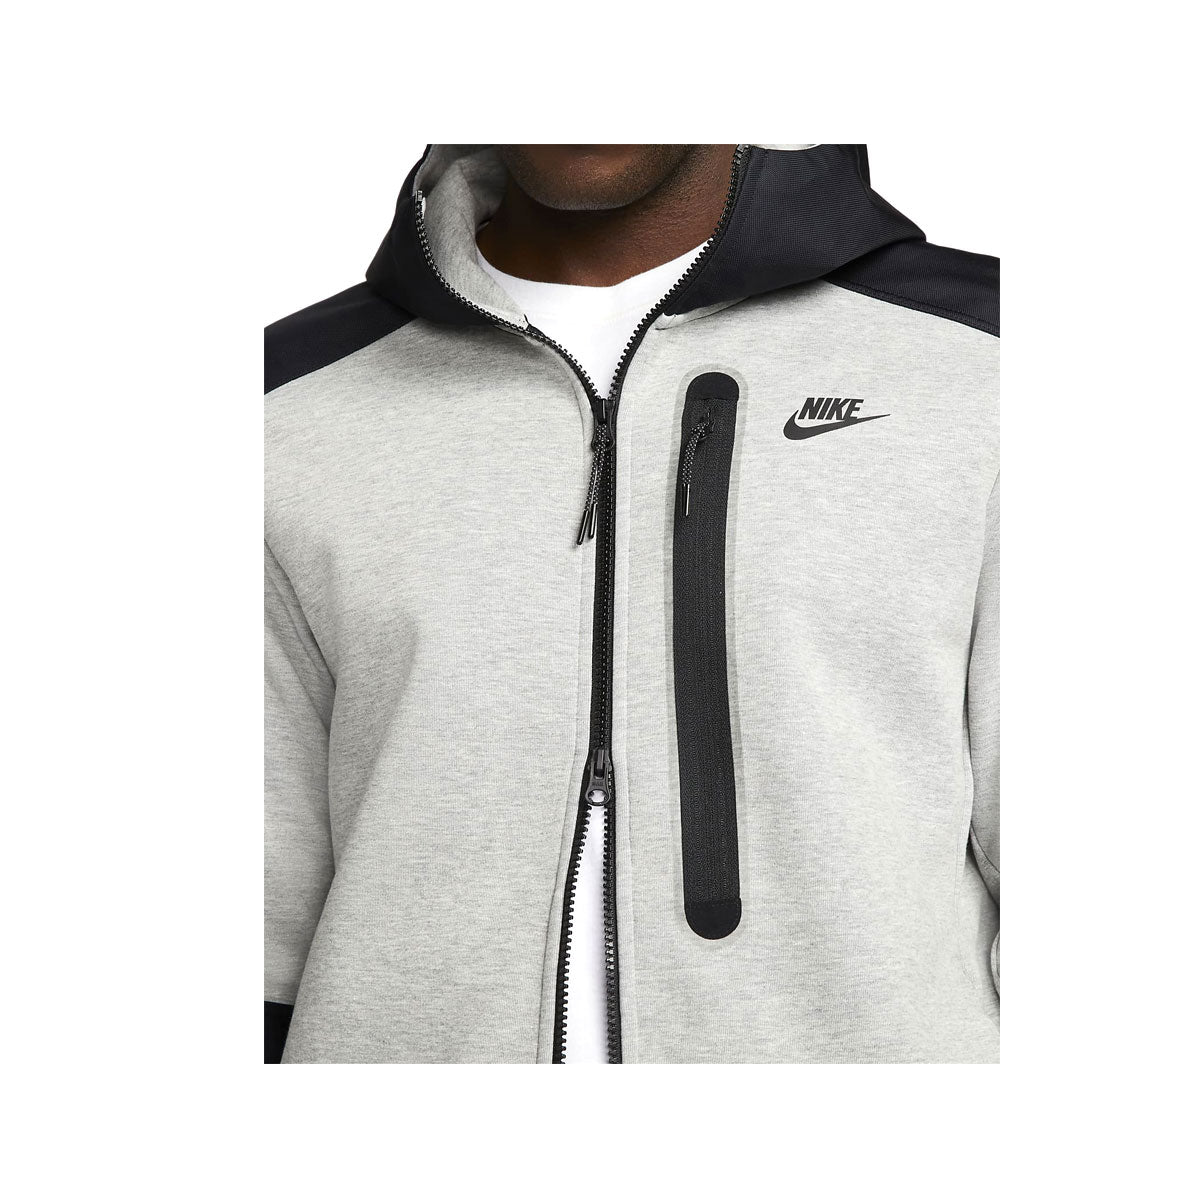 Nike Men's Sportswear Tech Fleece Full-Zip Top